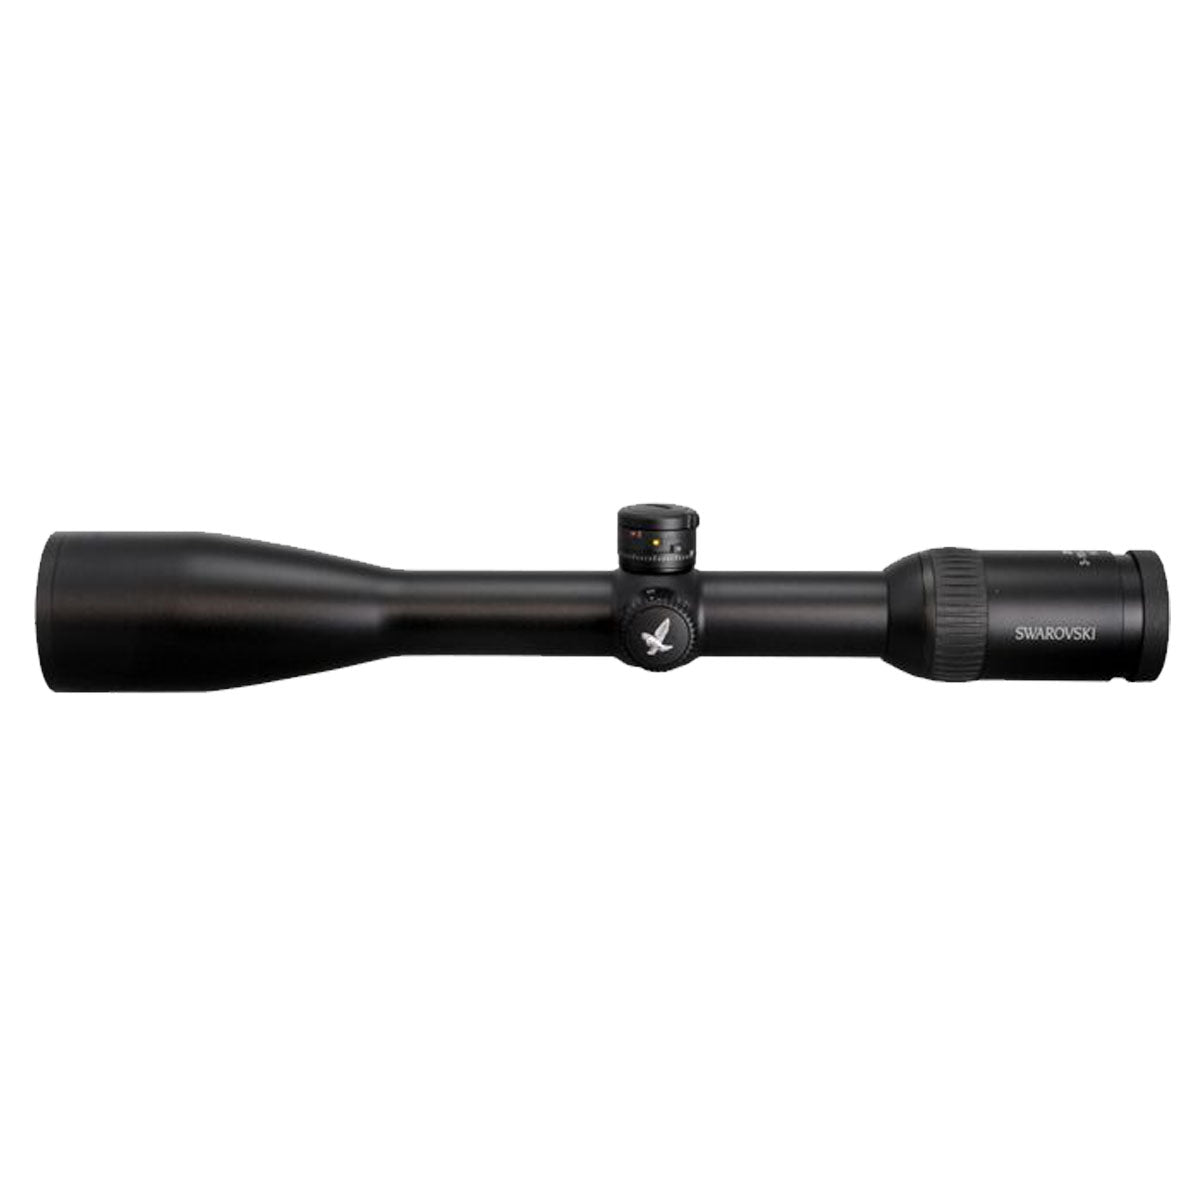 Swarovski Z6 3-18x50 - BT - PLEX Riflescope